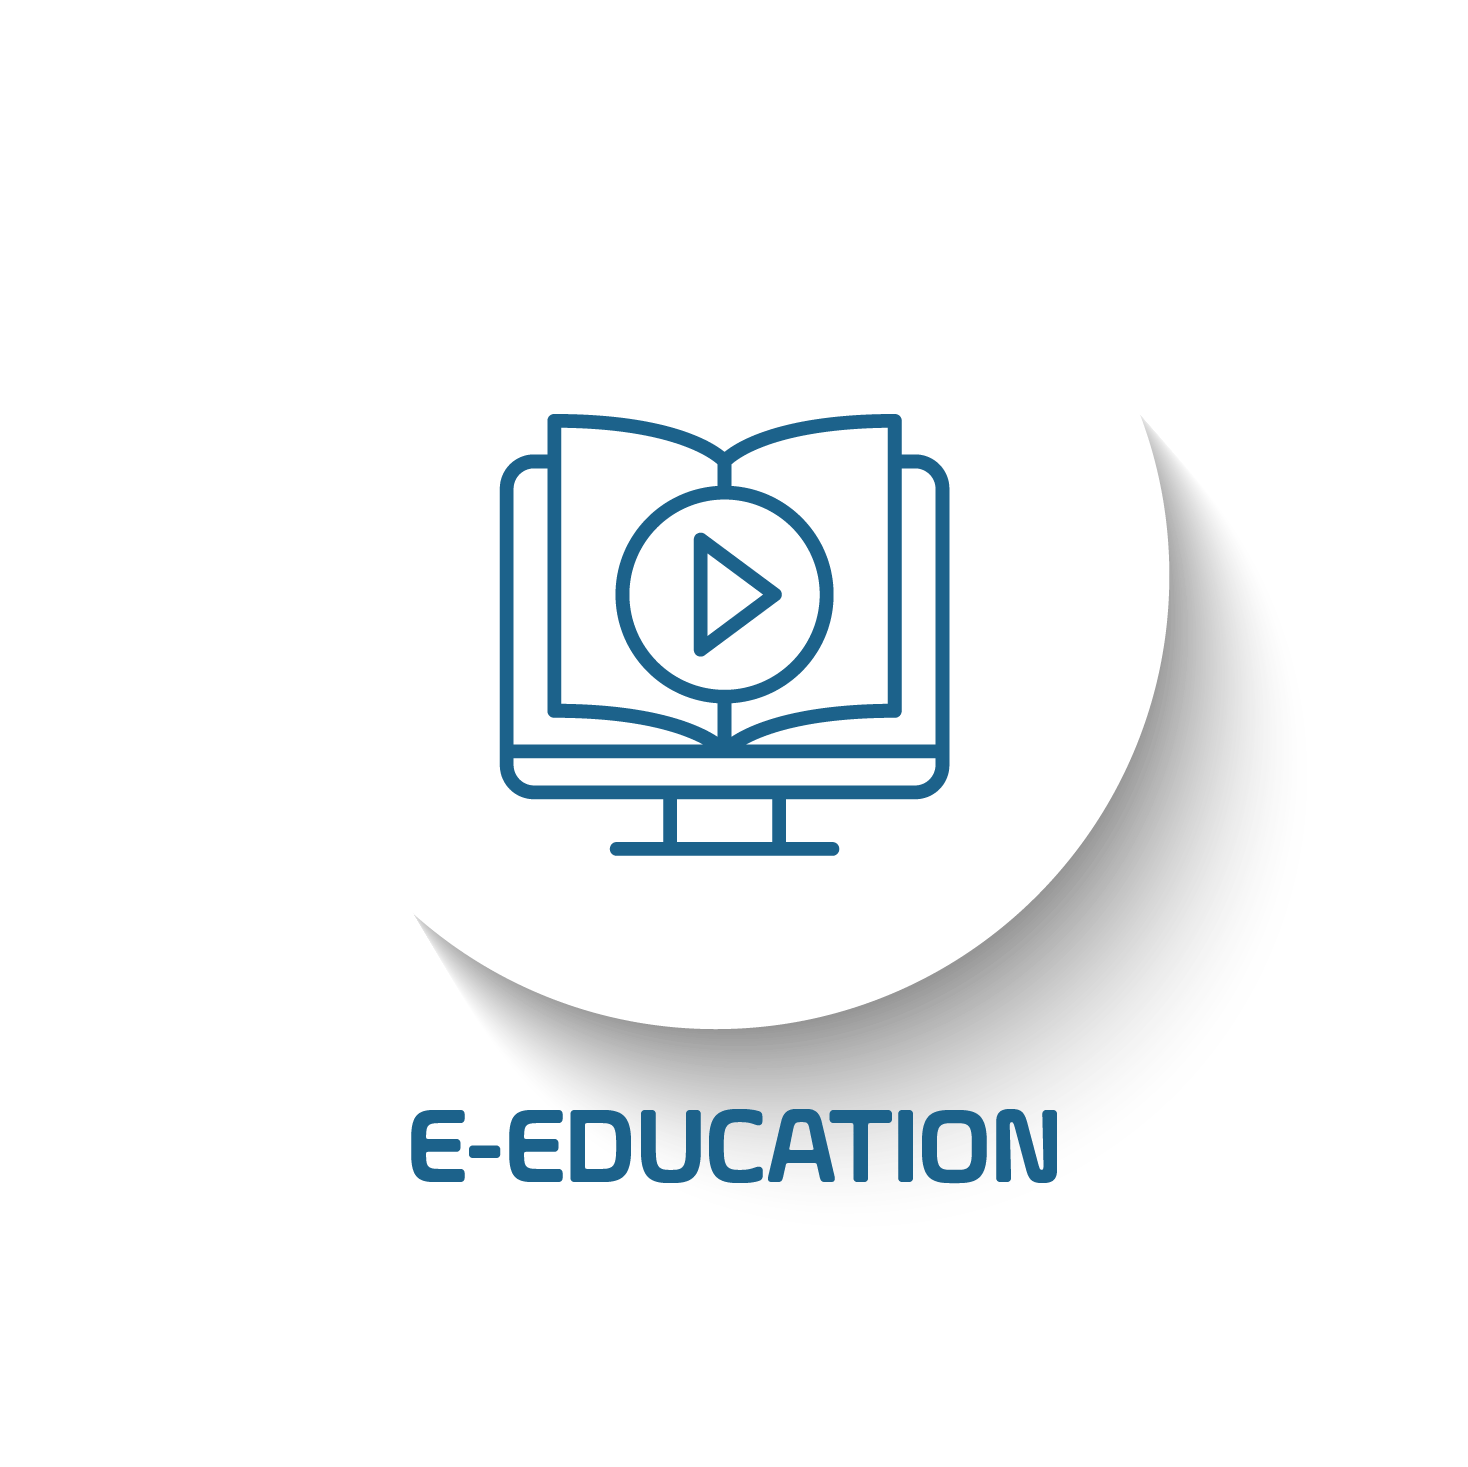 E-EDUCATION